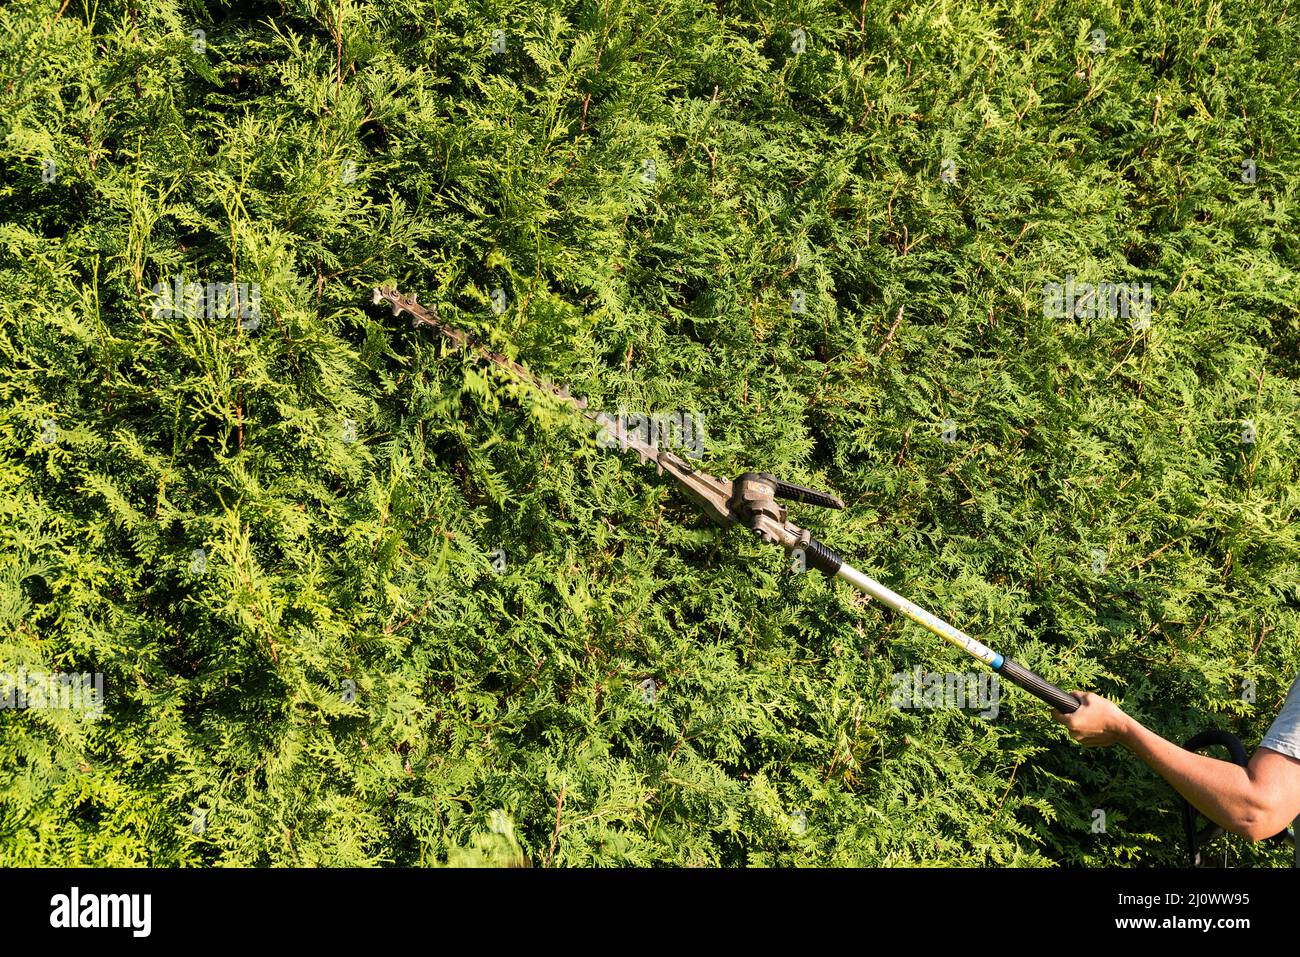 Le jardinier coupe la haie de thuja avec taille-haie - gros plan Banque D'Images